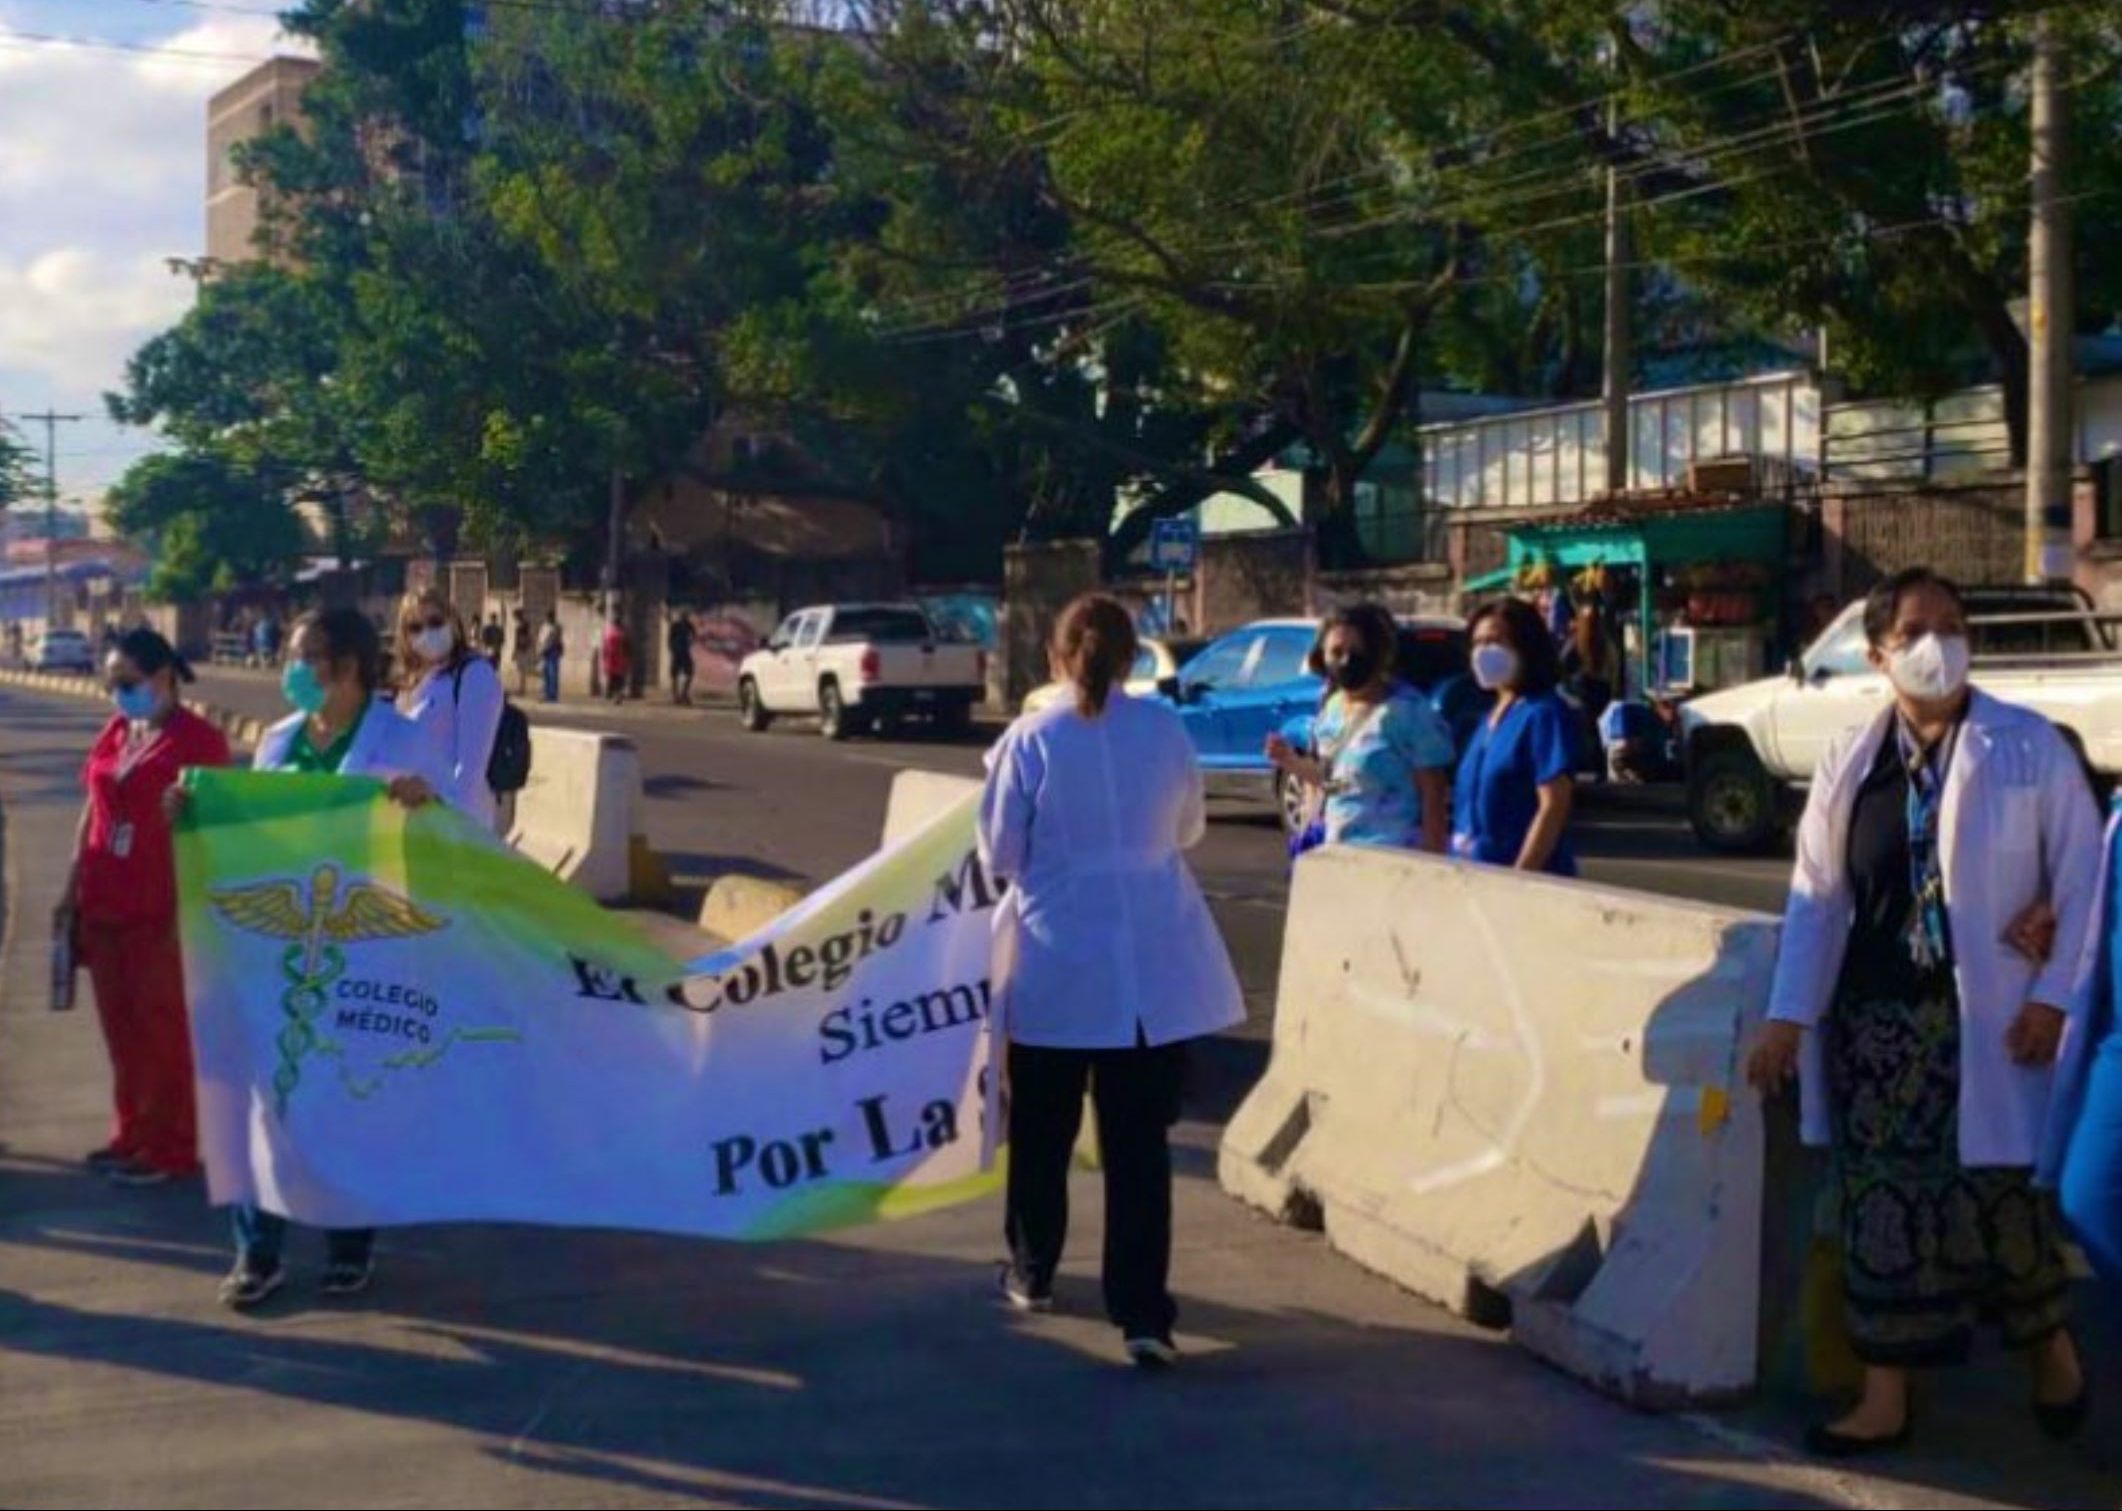 Médicos siguen en protestas y advierten que acciones pasarán a nivel nacional